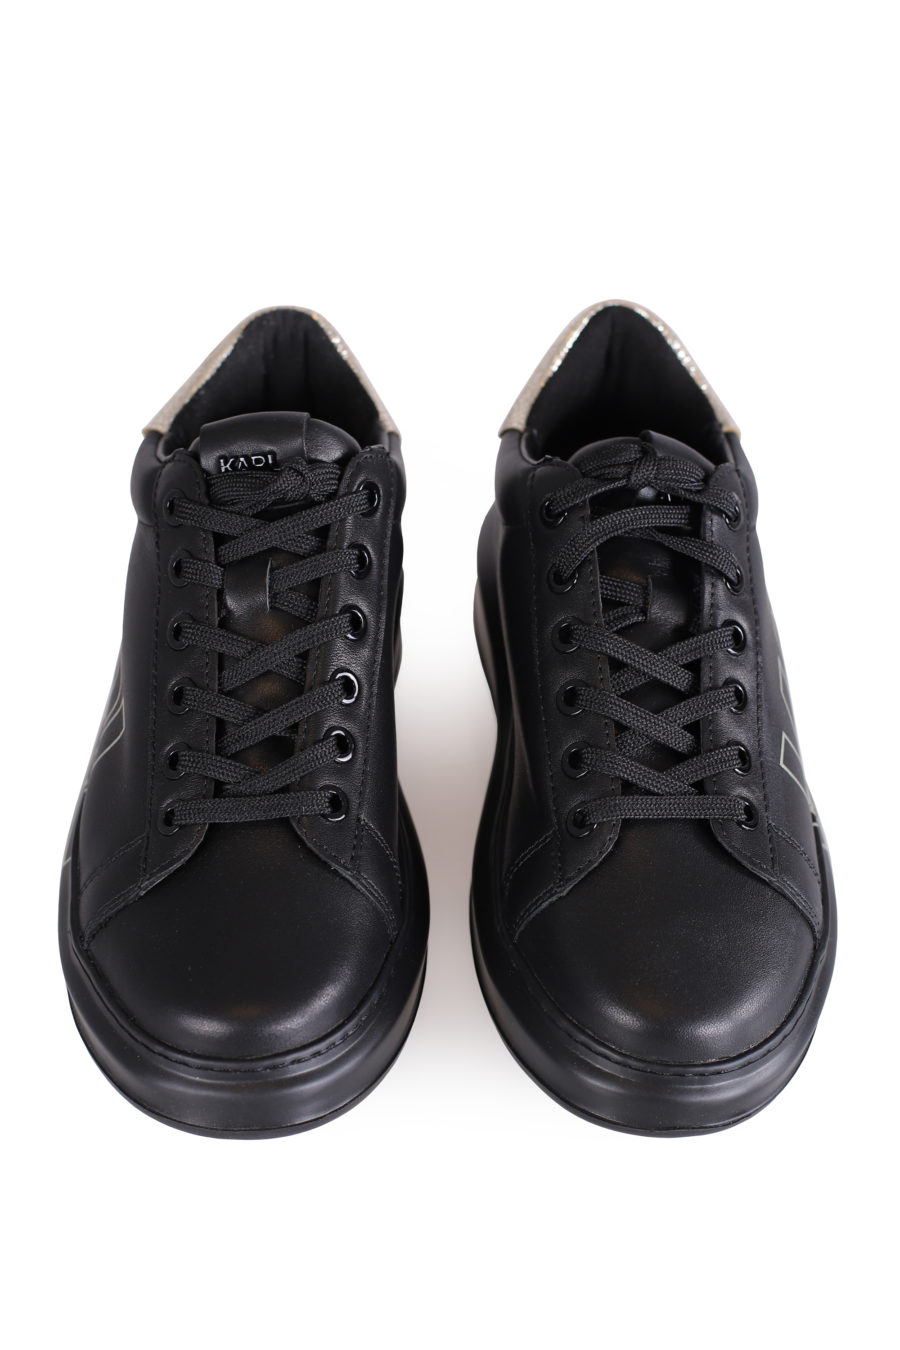 Zapatillas negras con logotipo y suela alta - IMG 0778